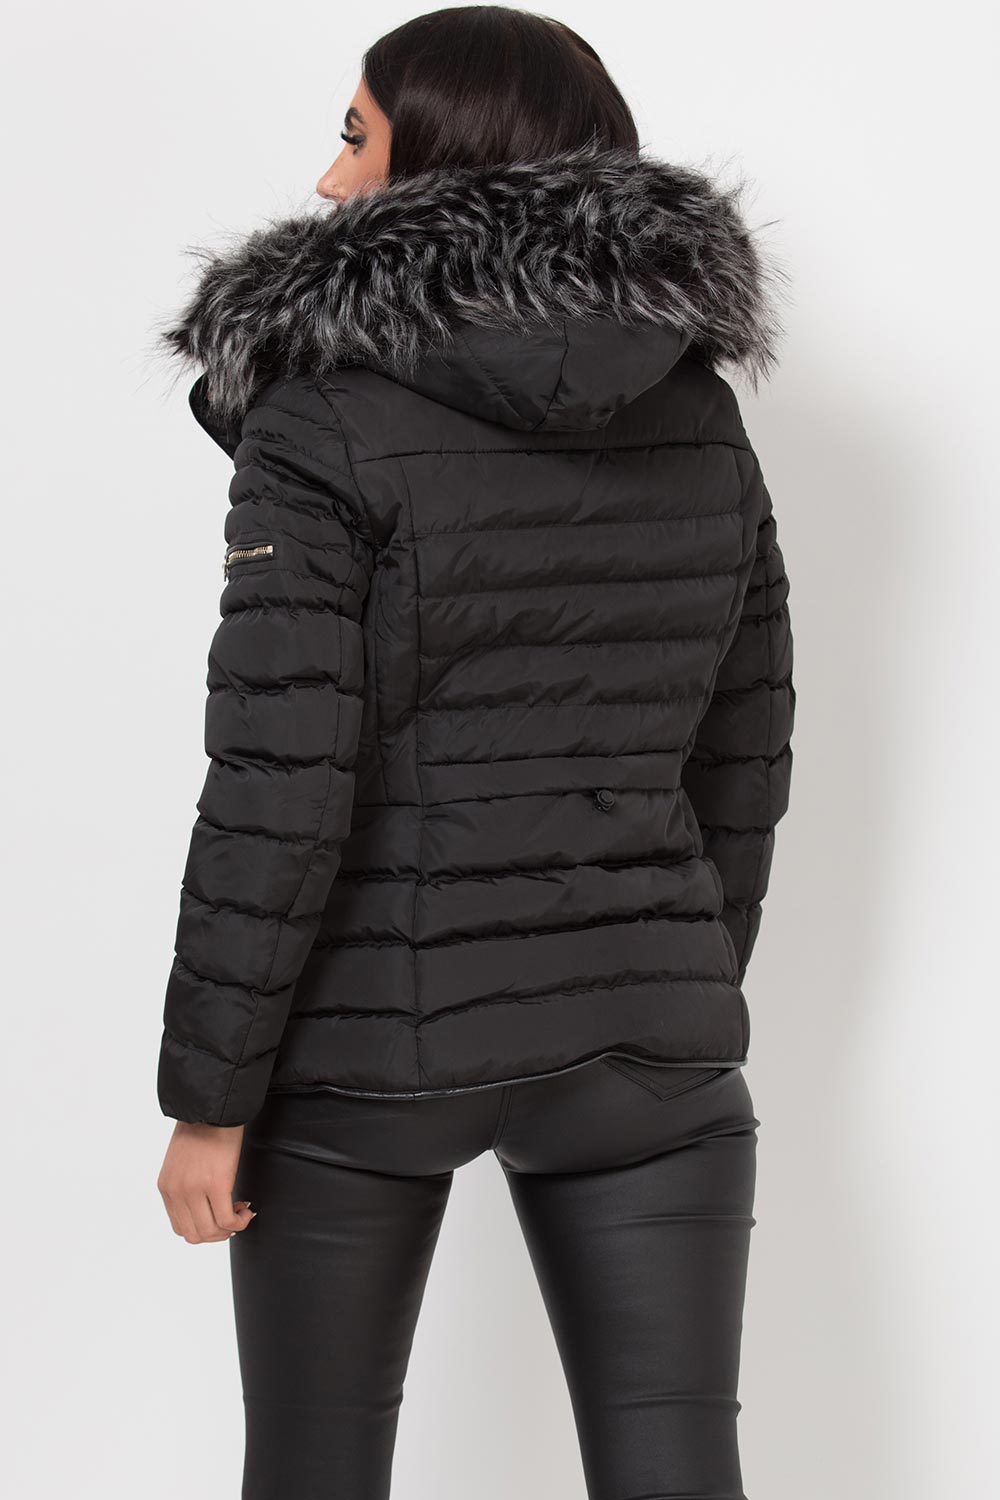 Winter Coats for Women,Reversible Winter Coat,with Detachable Hood